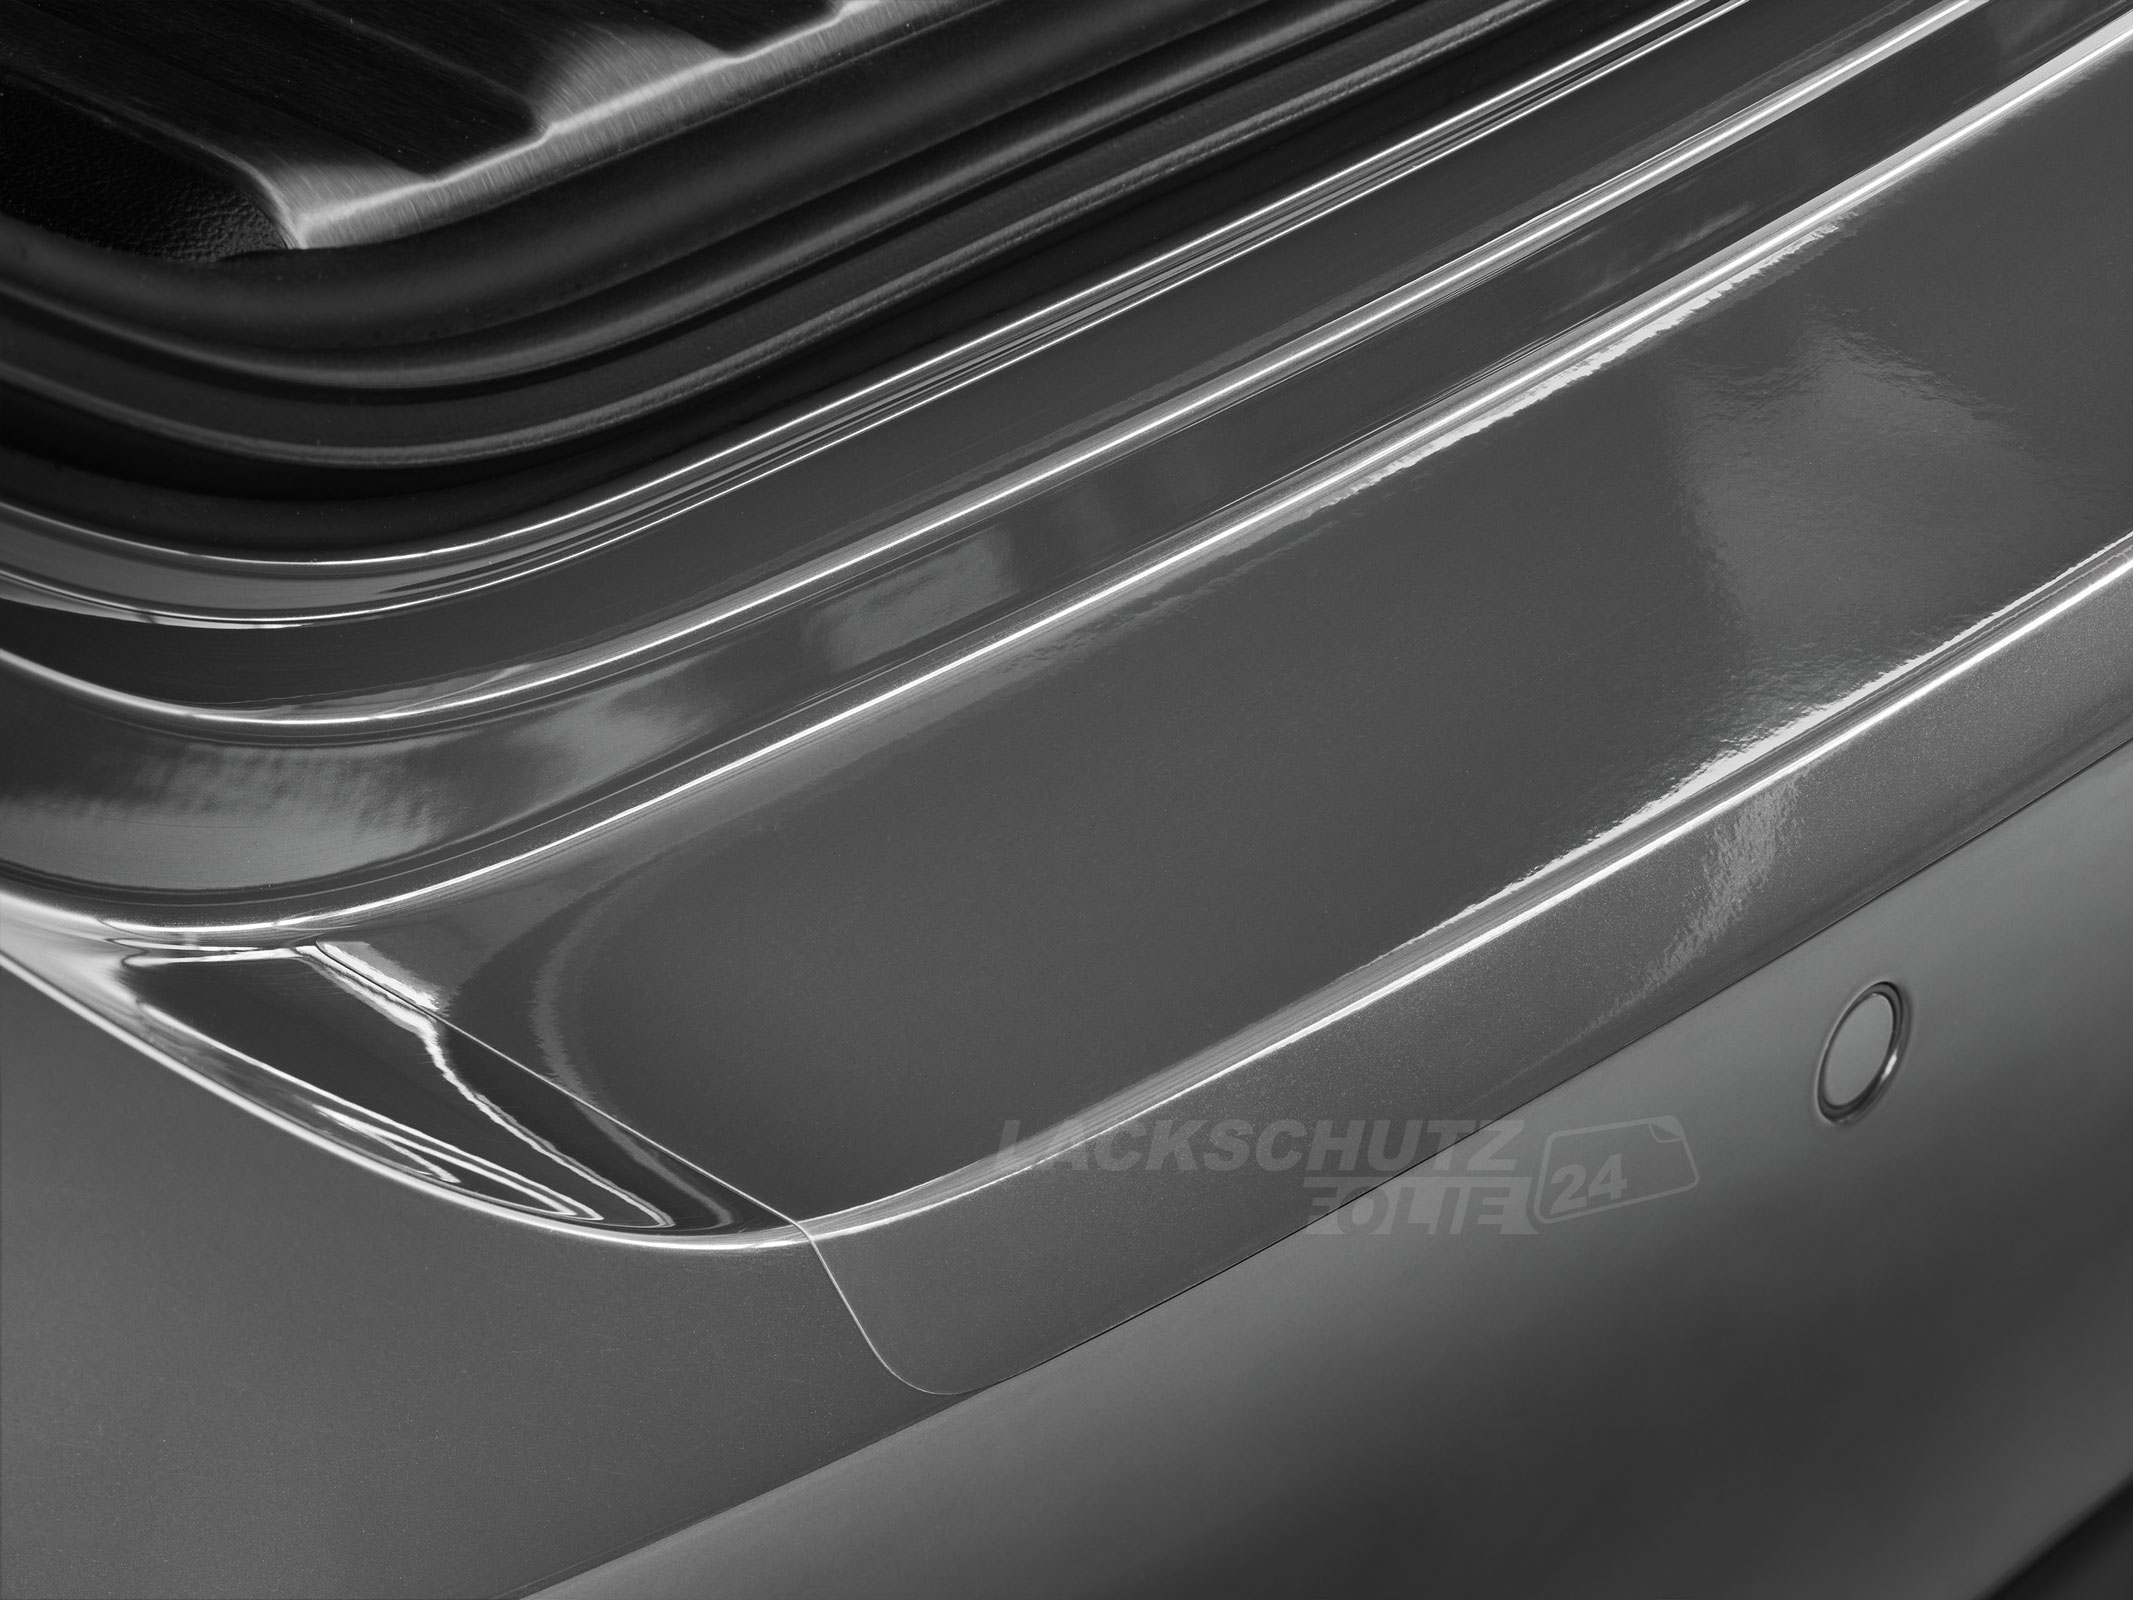 Ladekantenschutzfolie - Transparent Glatt Hochglänzend 240 µm stark für Seat Alhambra (I) Typ 7M8, bis BJ 2000